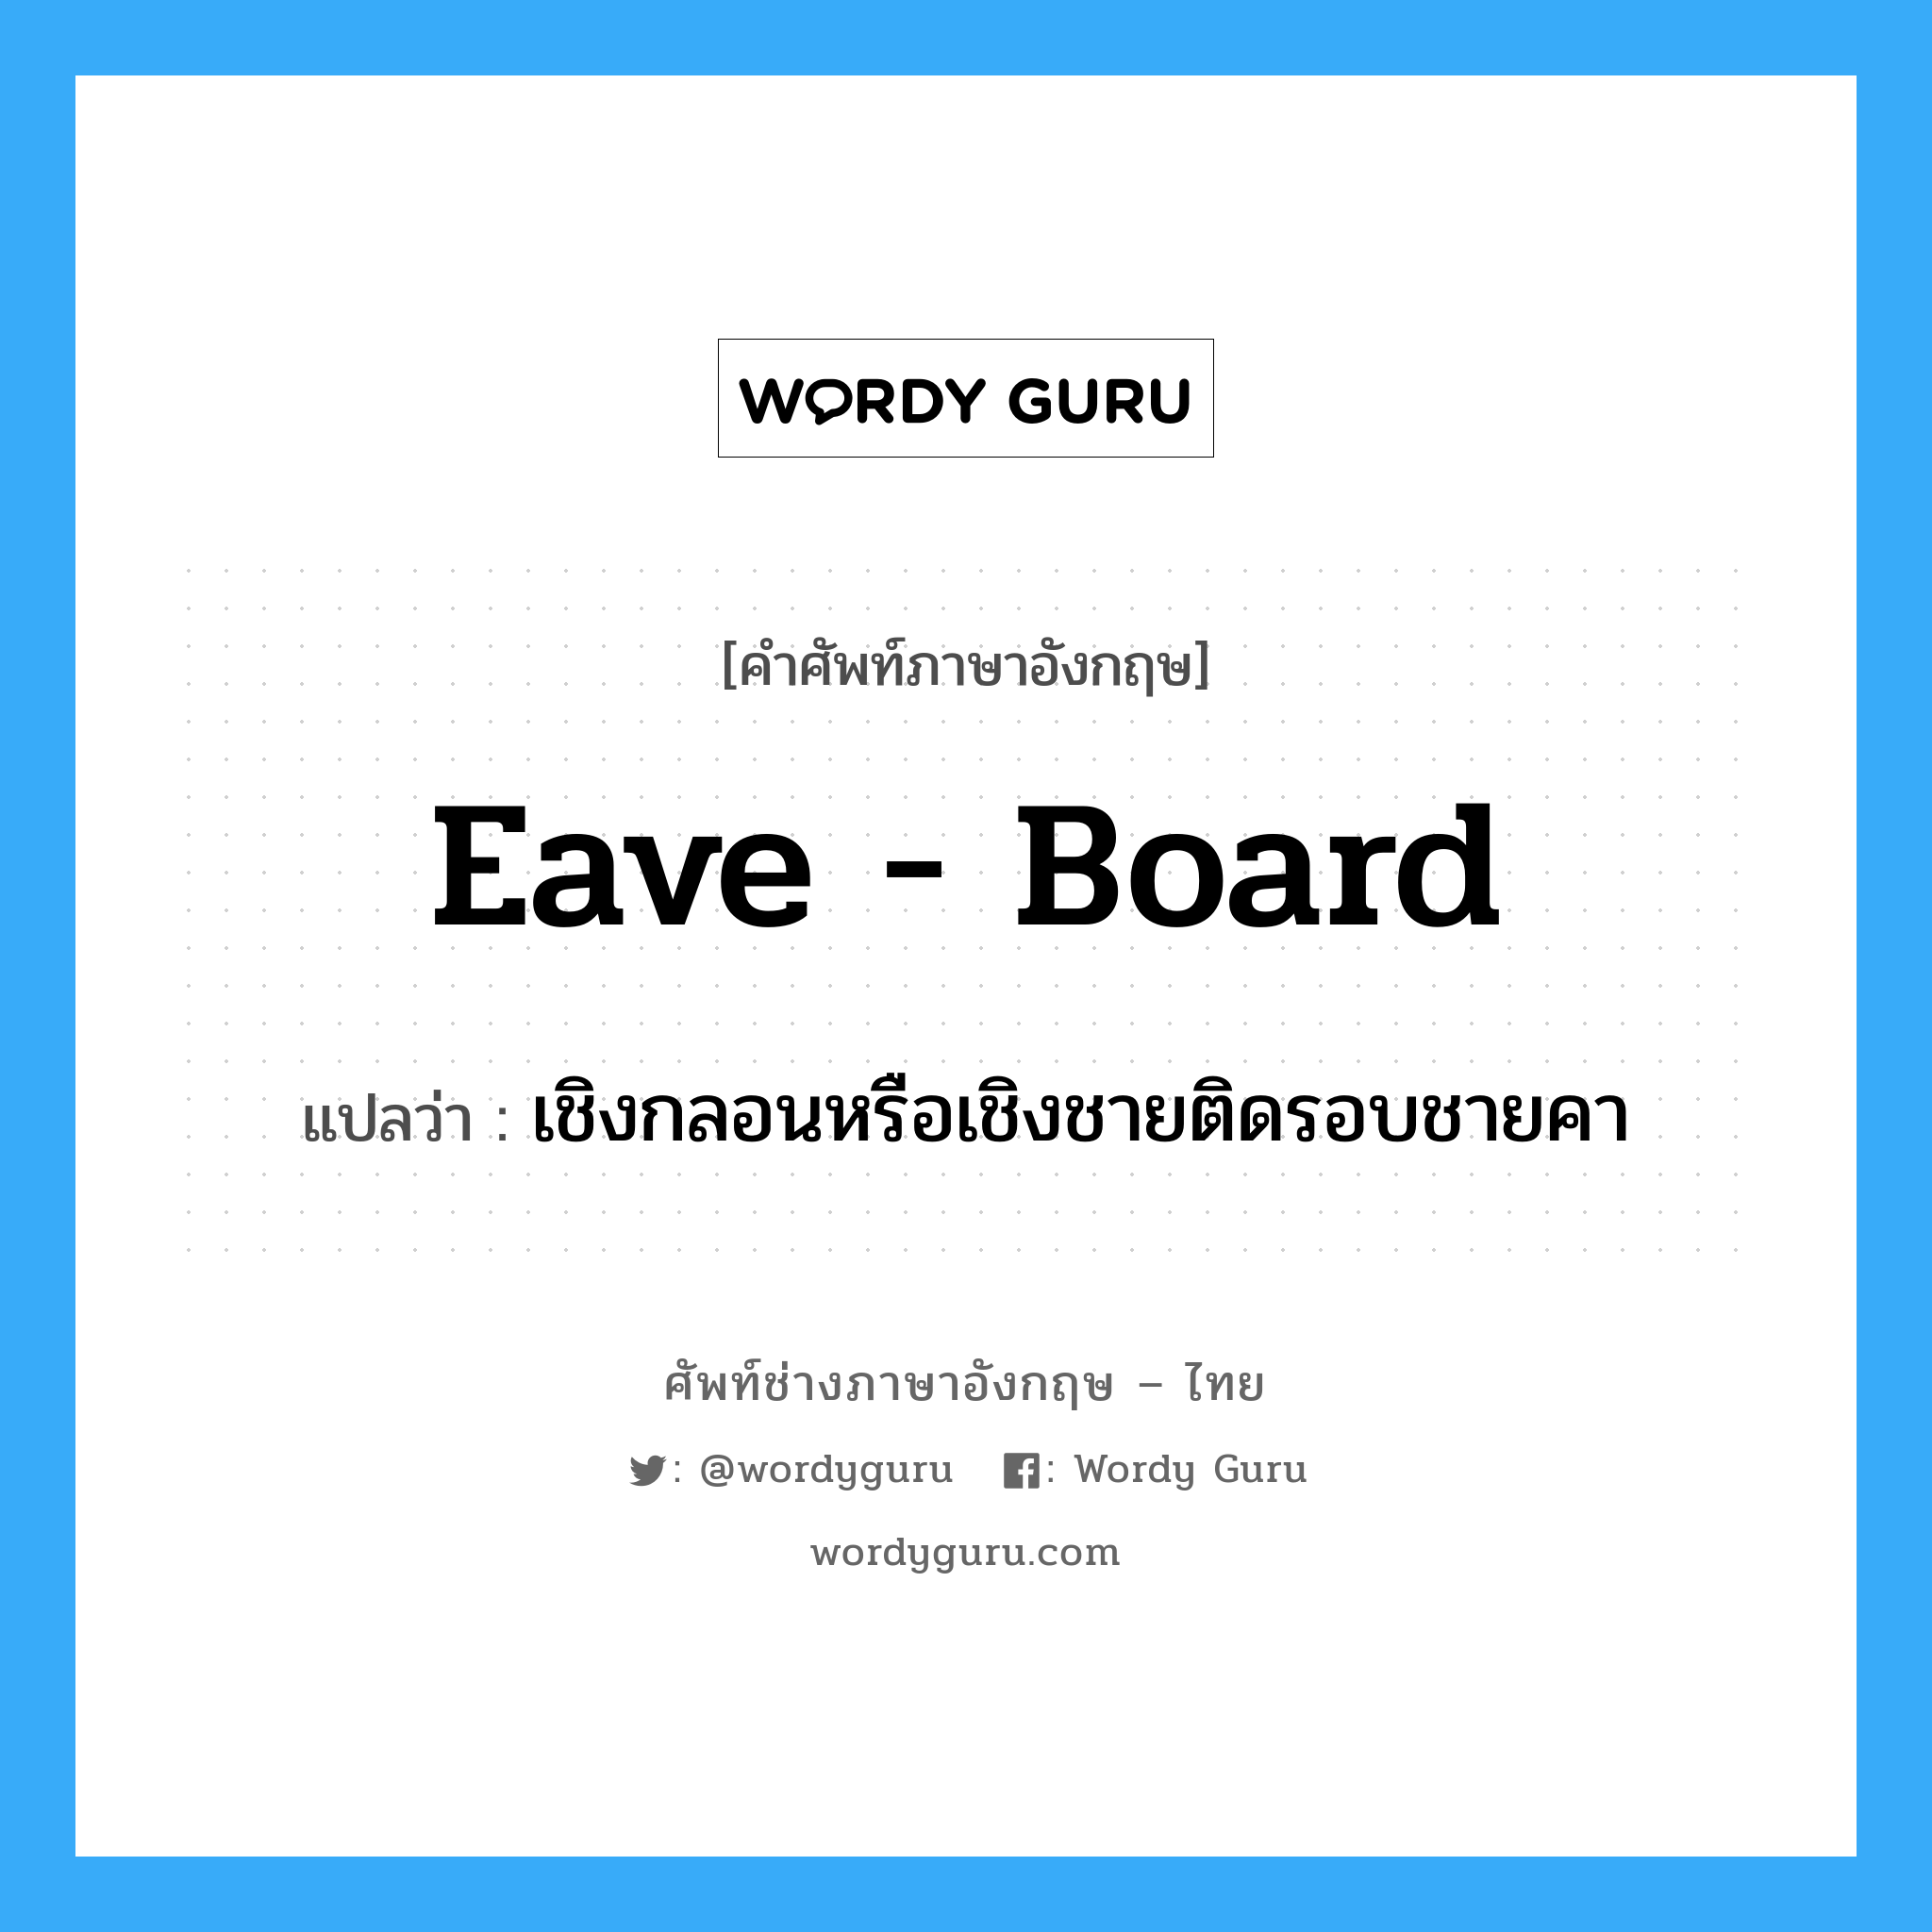 eave-board แปลว่า?, คำศัพท์ช่างภาษาอังกฤษ - ไทย eave - board คำศัพท์ภาษาอังกฤษ eave - board แปลว่า เชิงกลอนหรือเชิงชายติดรอบชายคา